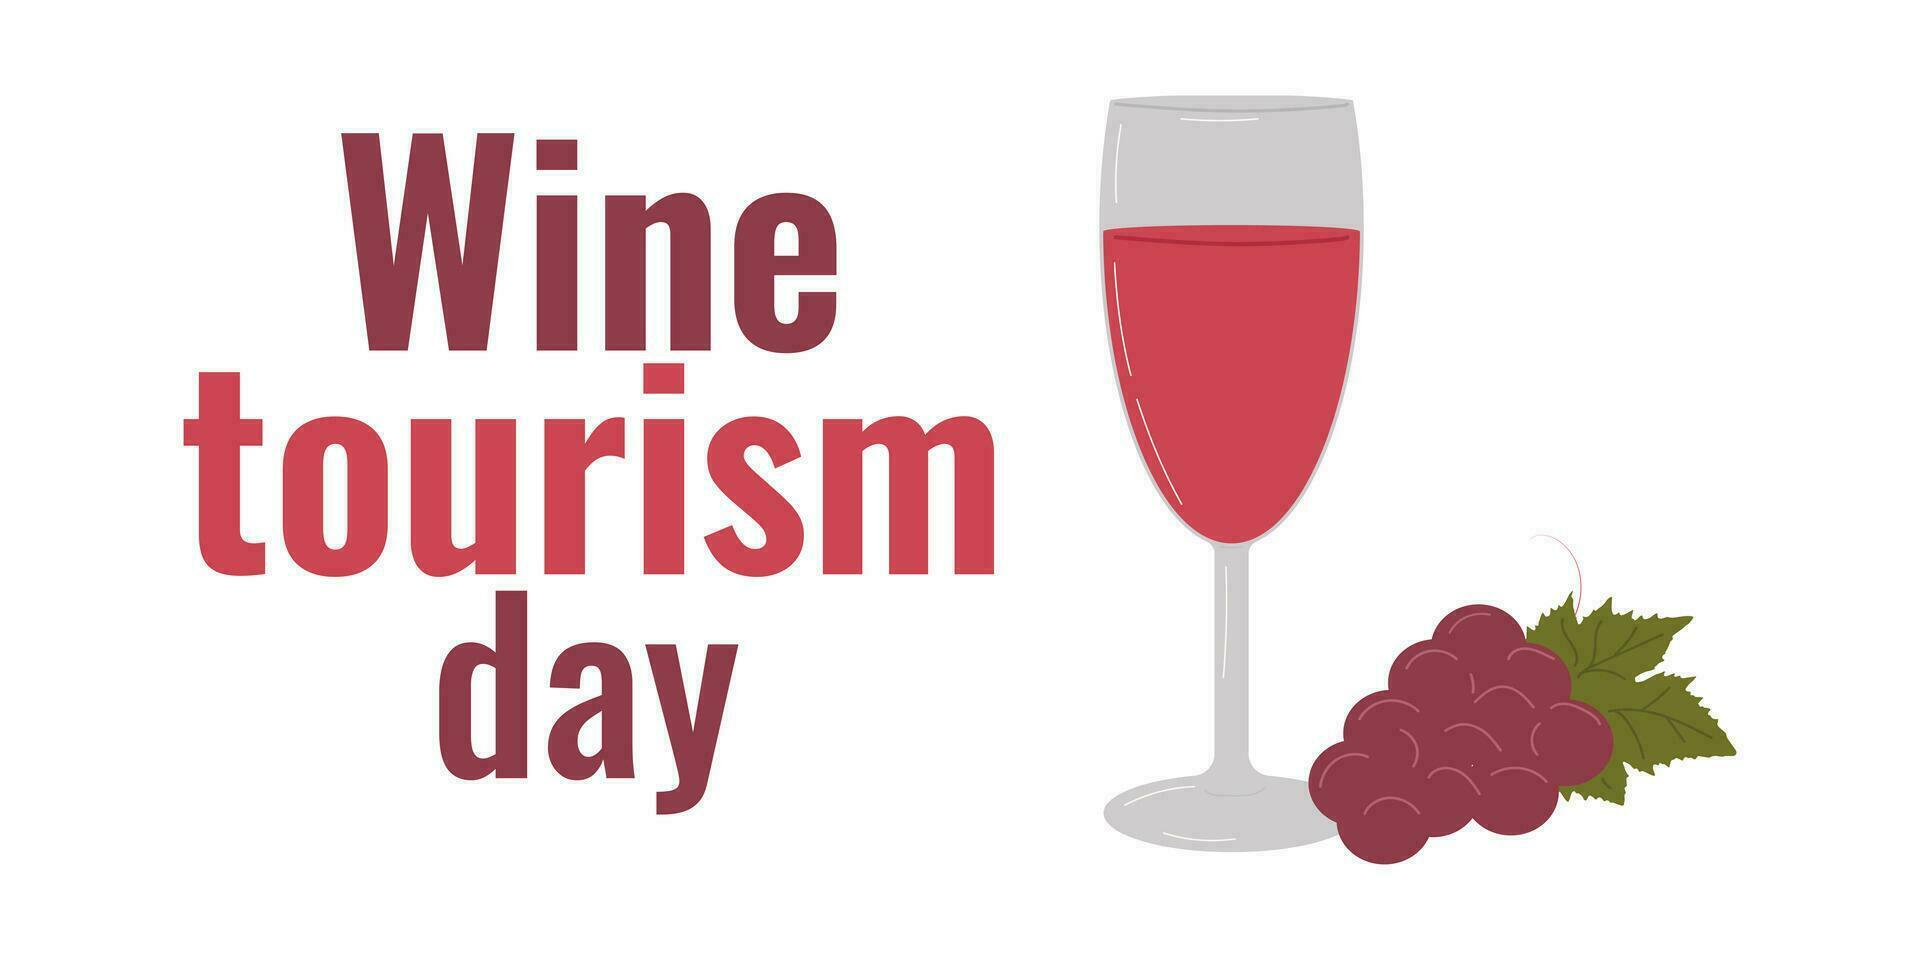 vin turism dag. begrepp av de Semester. vektor